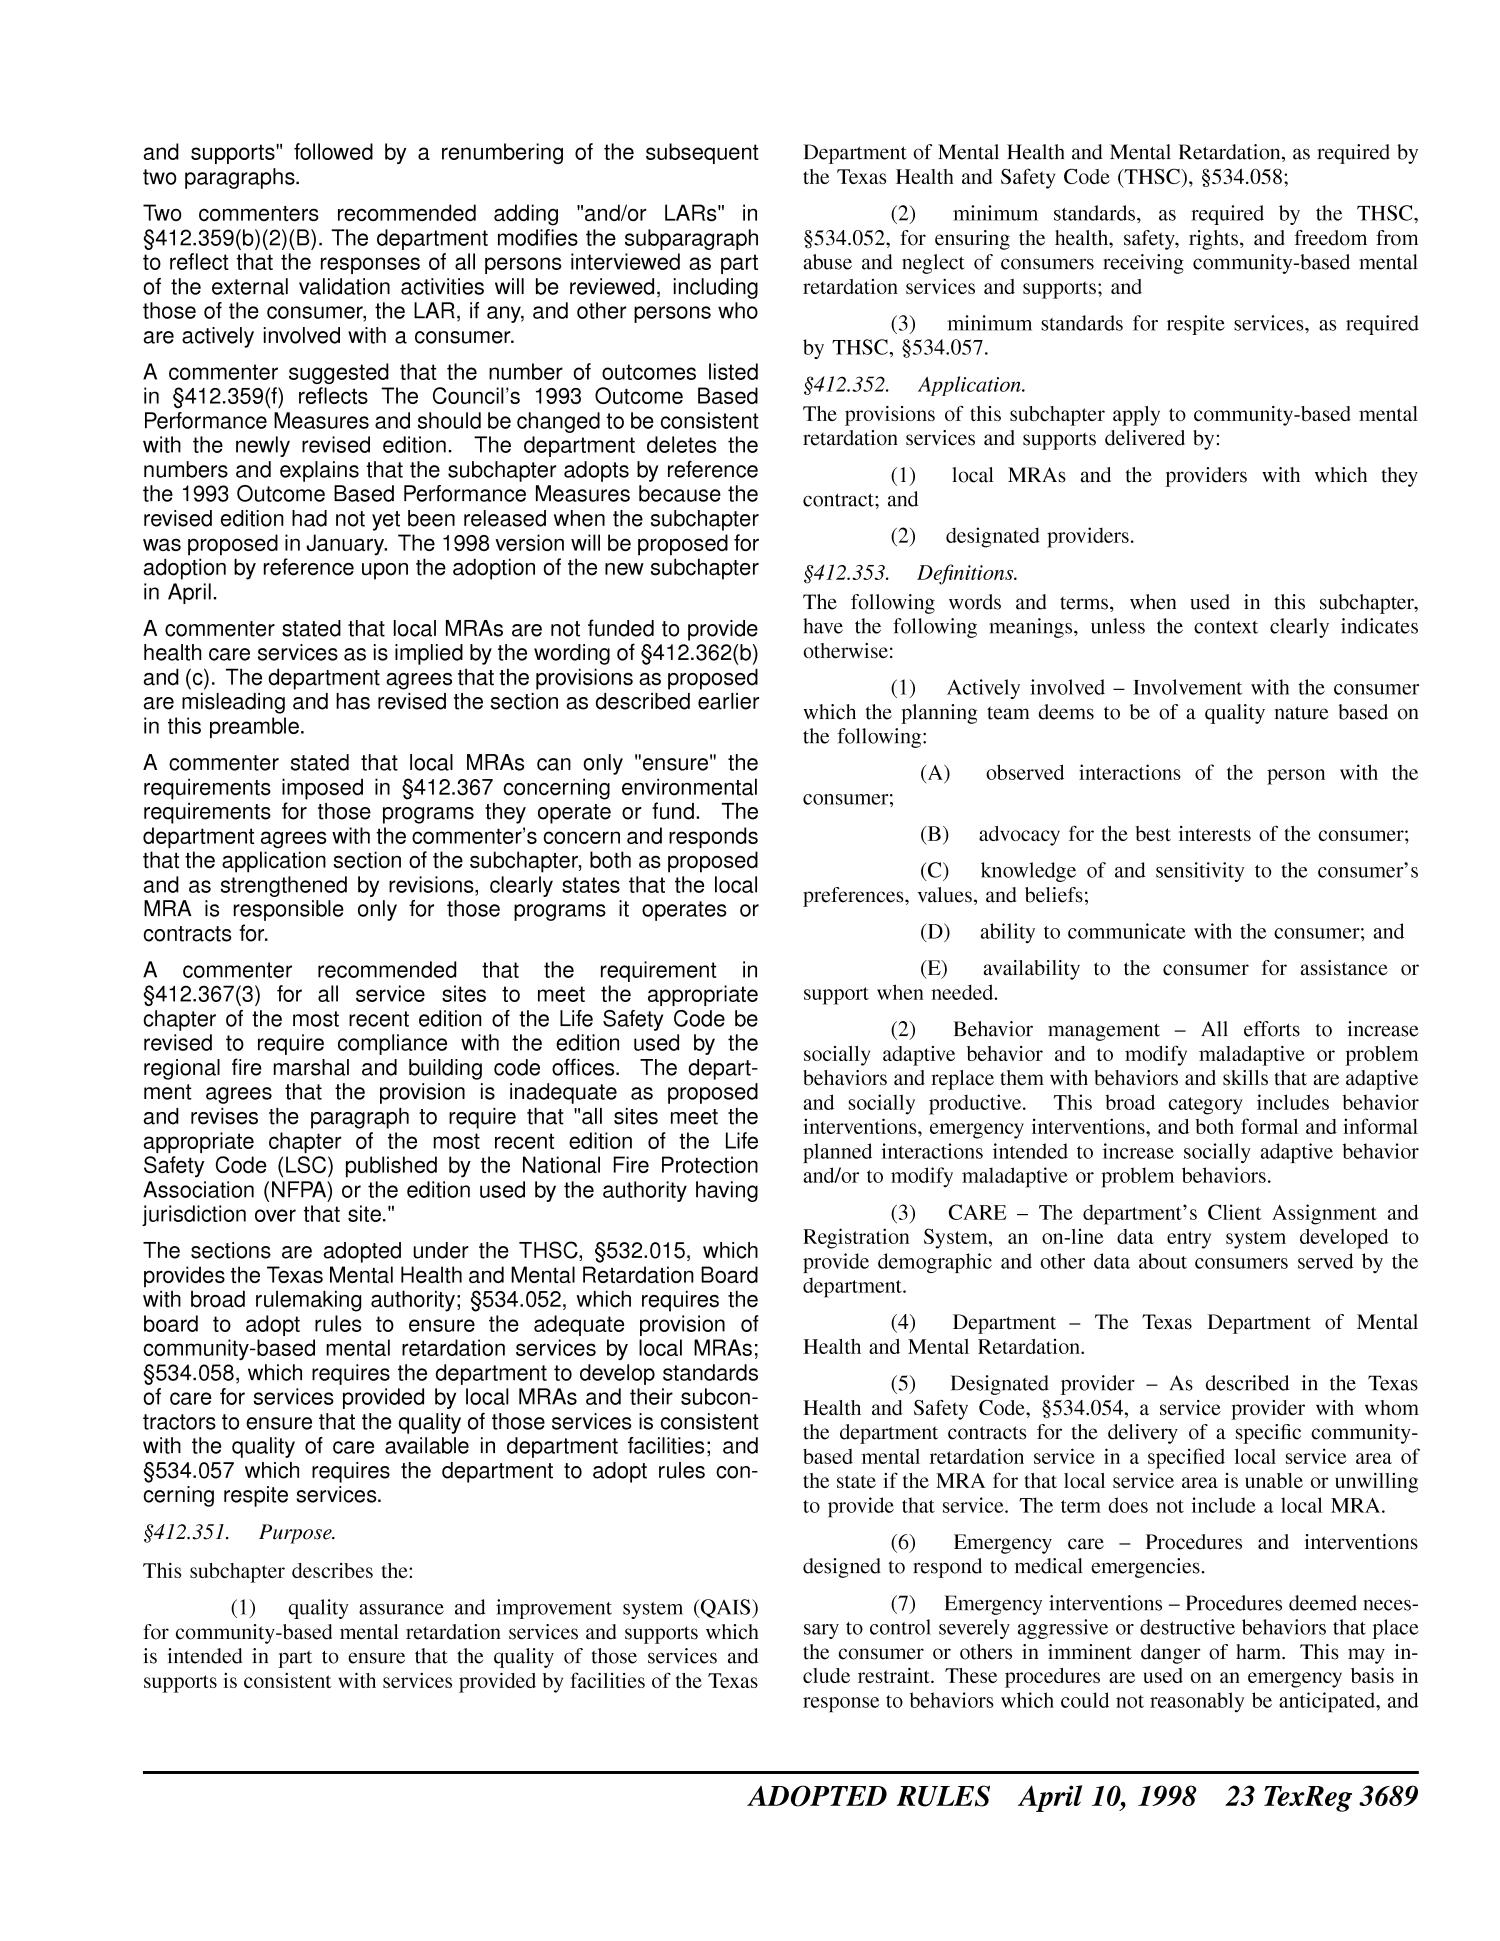 Texas Register, Volume 23, Number 15, Pages 3631-3764, April 10, 1998
                                                
                                                    3689
                                                